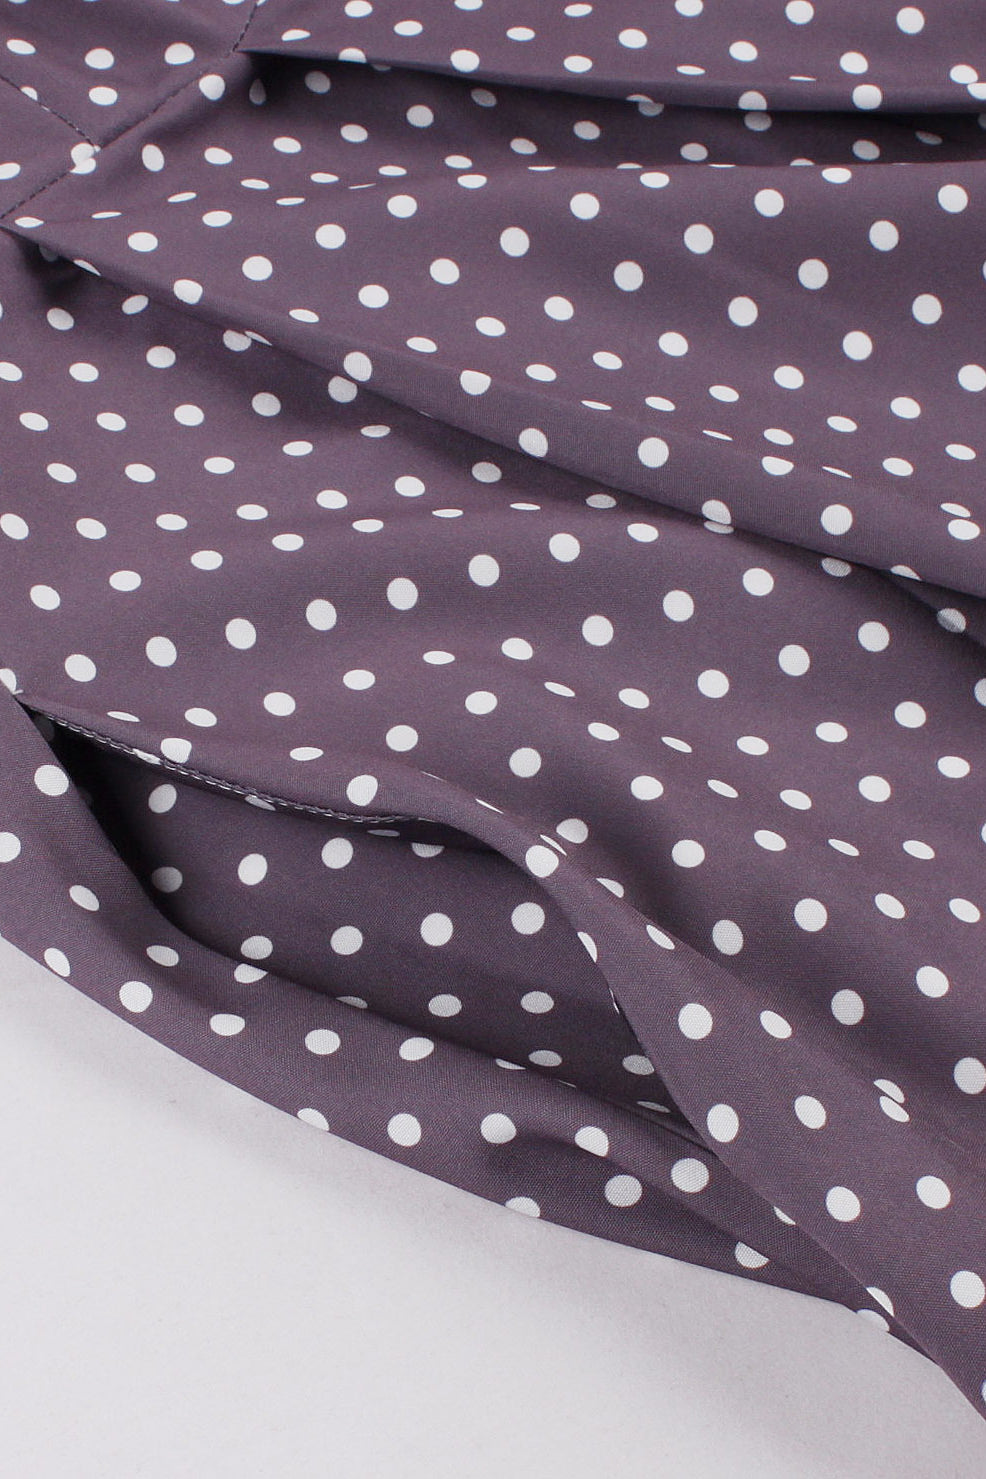 Dusty Purple Buttons Dots A-line Slip Vintage Dress